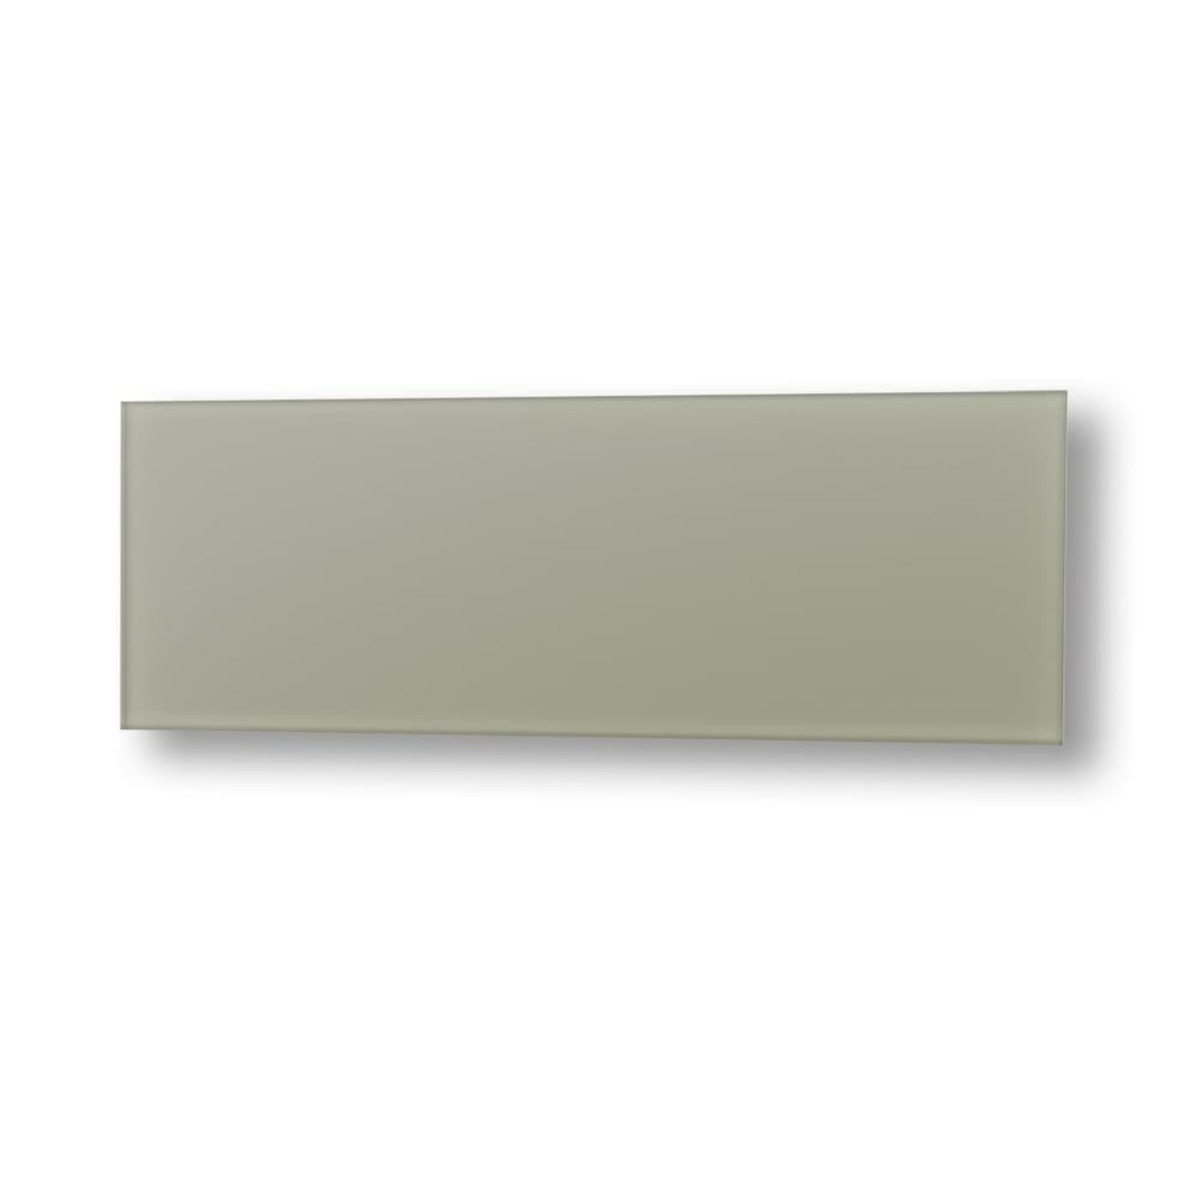 Topný panel Fenix GS+ 125x65 cm skleněný světle šedá 11V5437788 Fenix